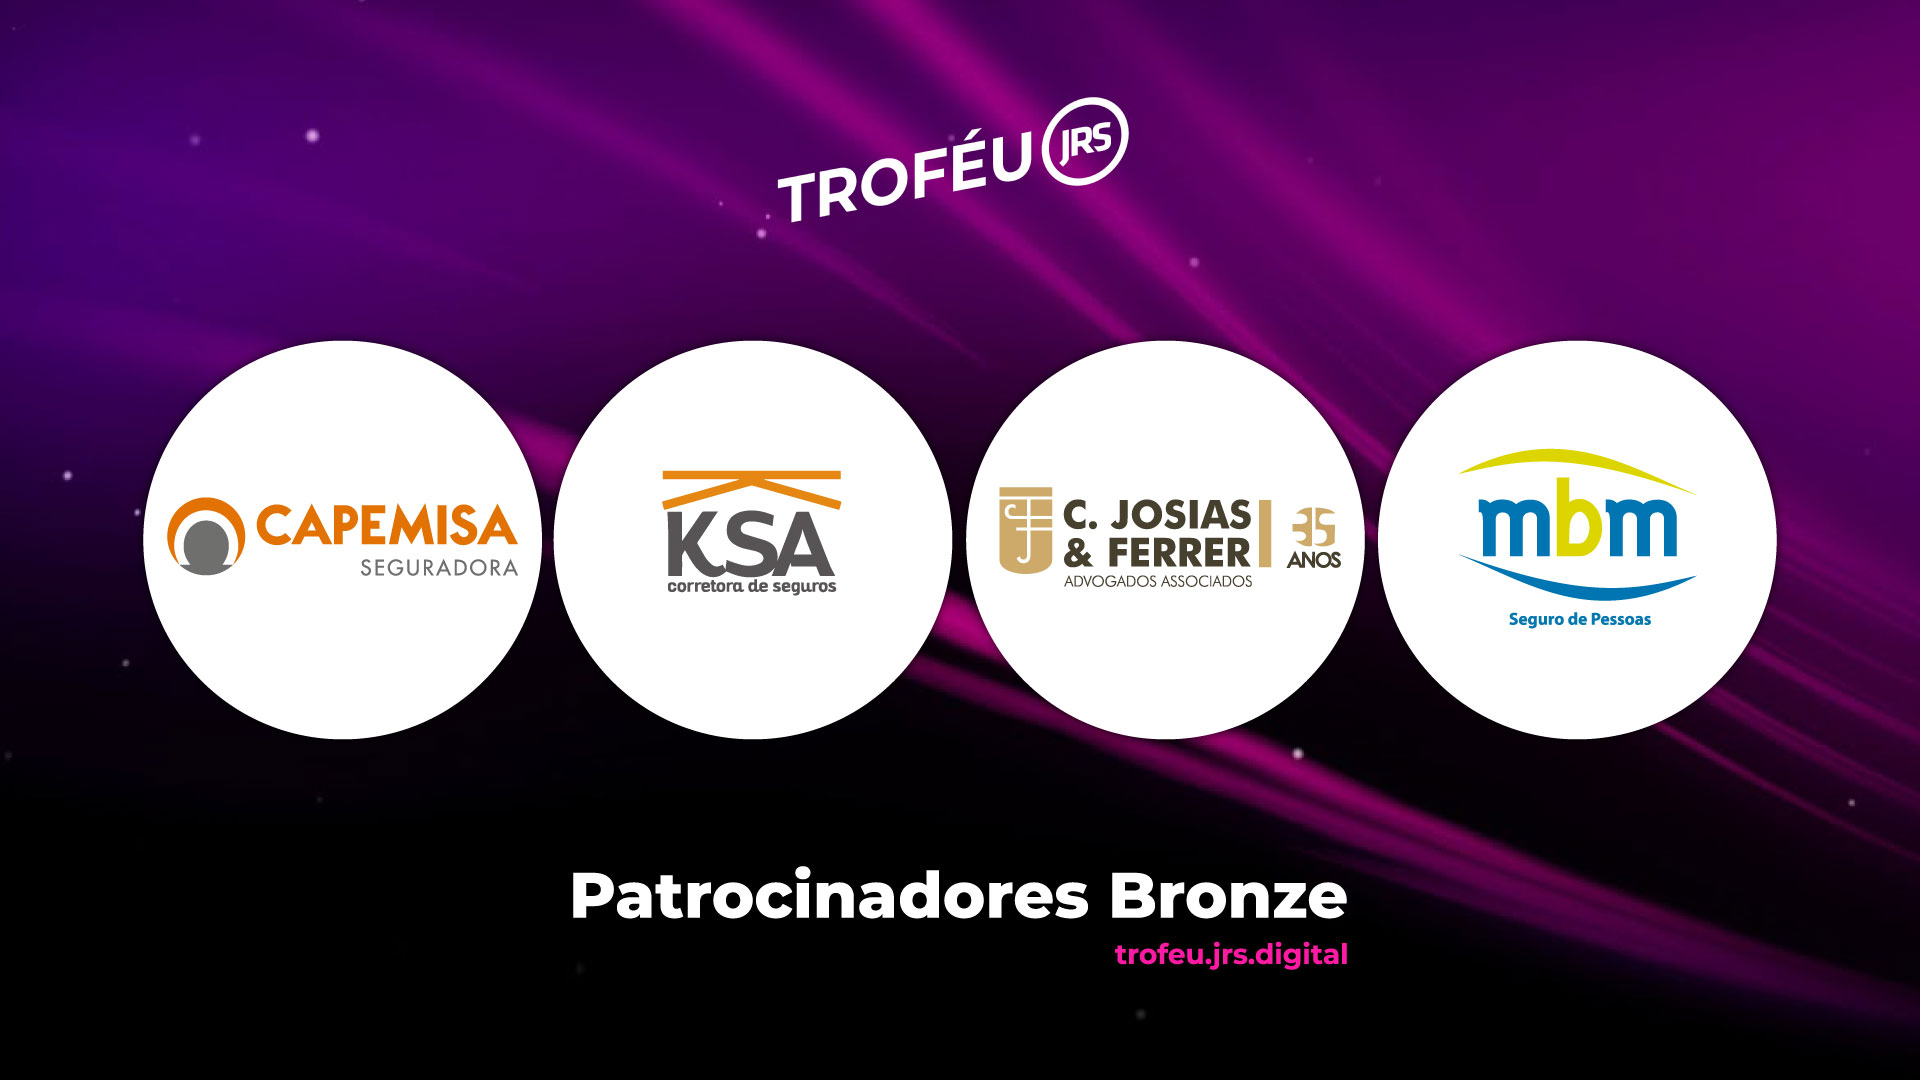 Capemisa, KSA, C Josias & Ferrer e Grupo MBM são Patrocinadores Bronze do Troféu JRS 2021